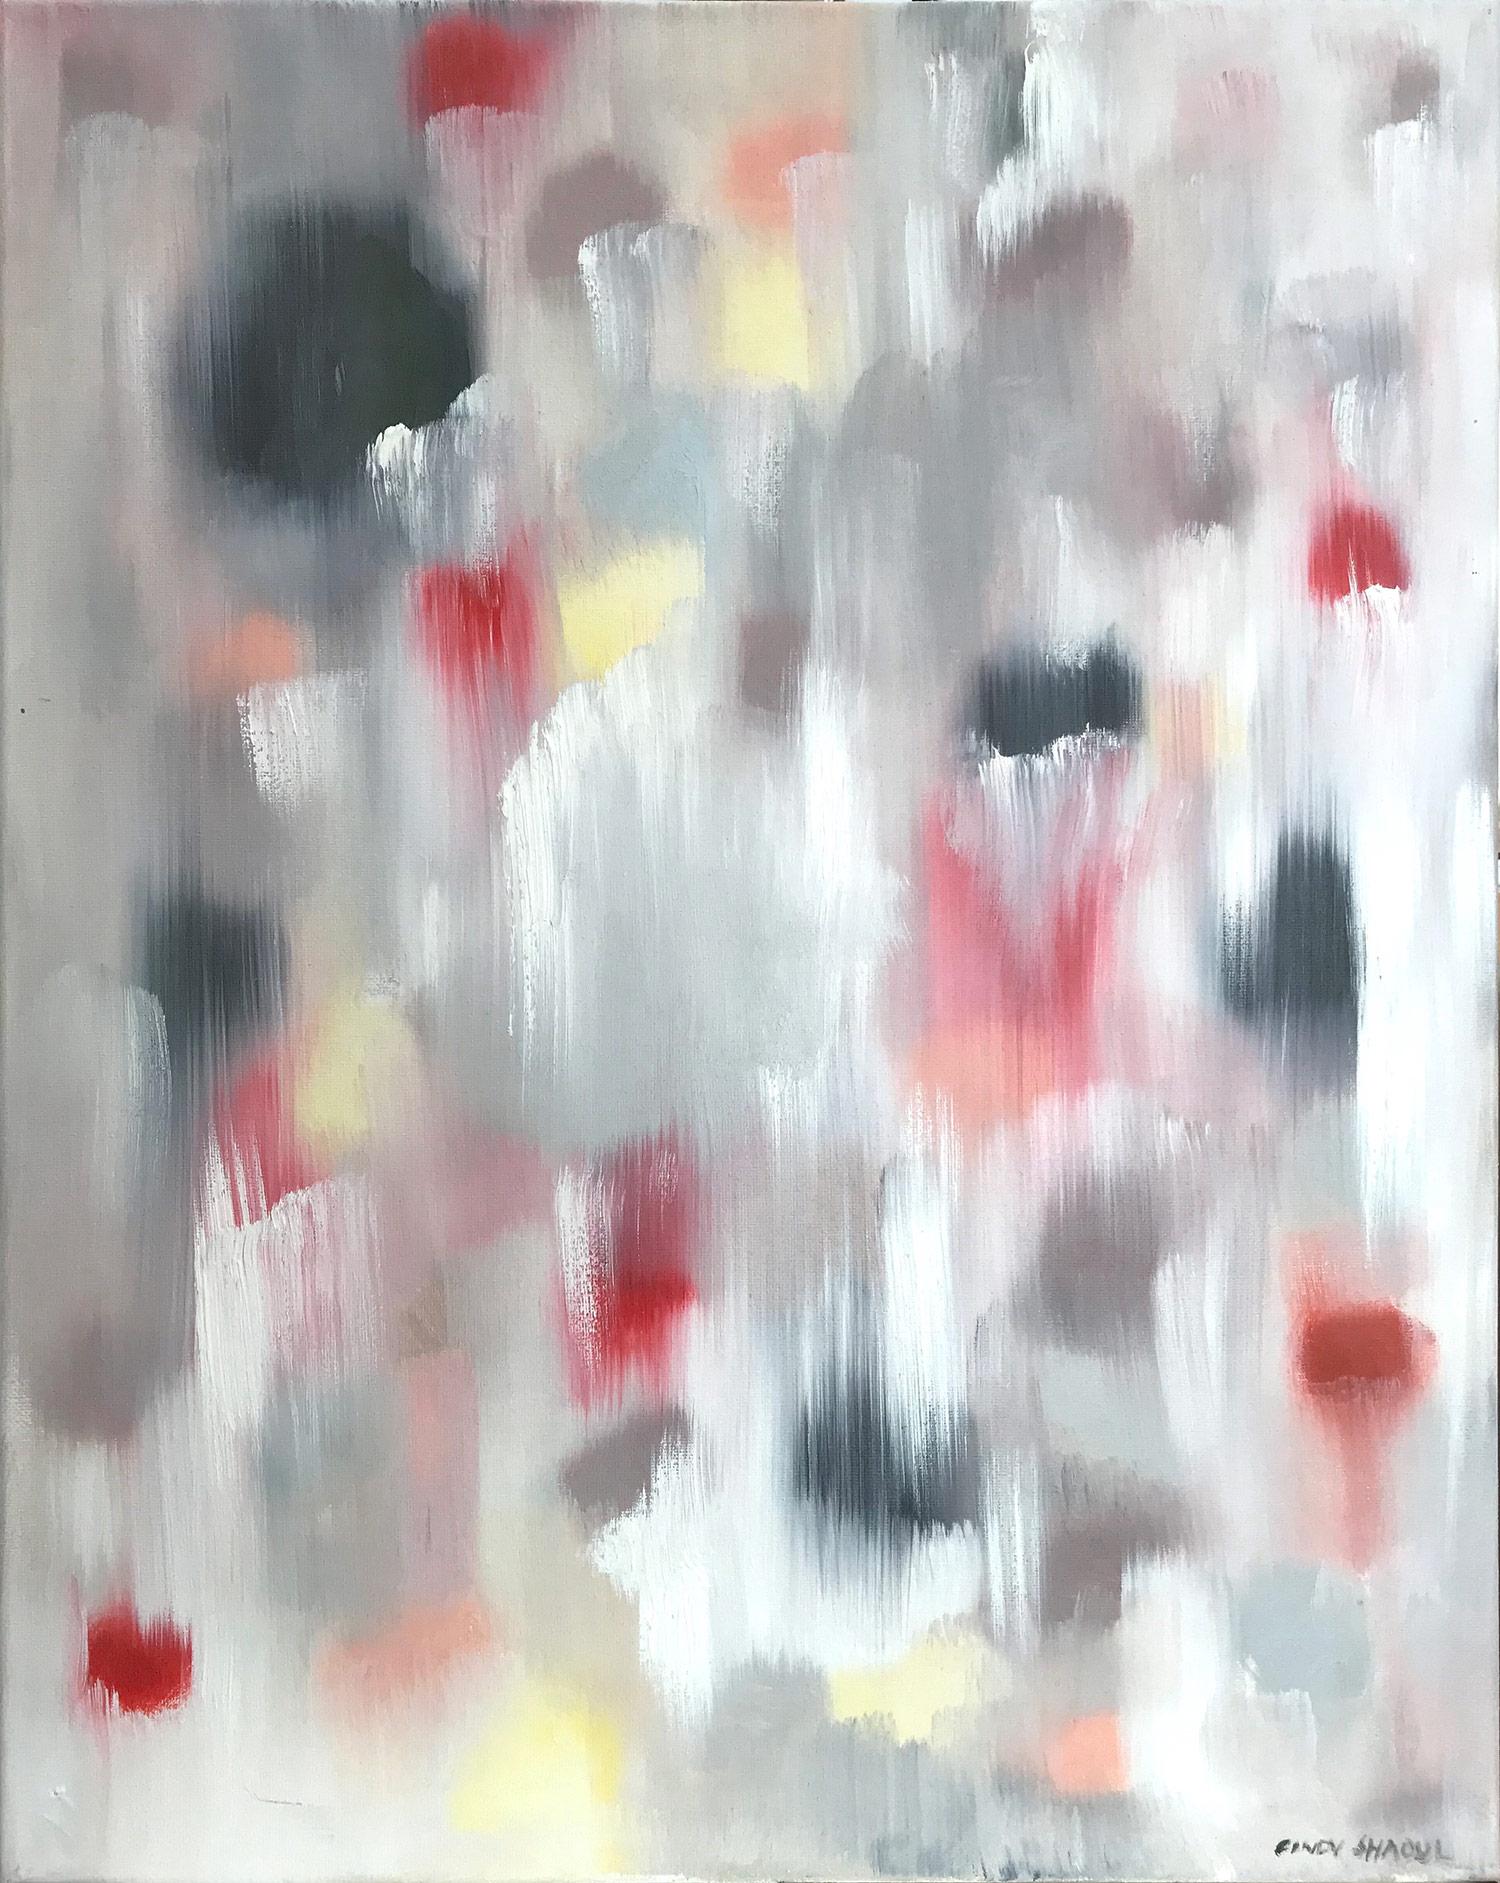 Abstract Painting Cindy Shaoul - "Dripping Dots - Sicile" - Peinture à l'huile contemporaine colorée sur toile